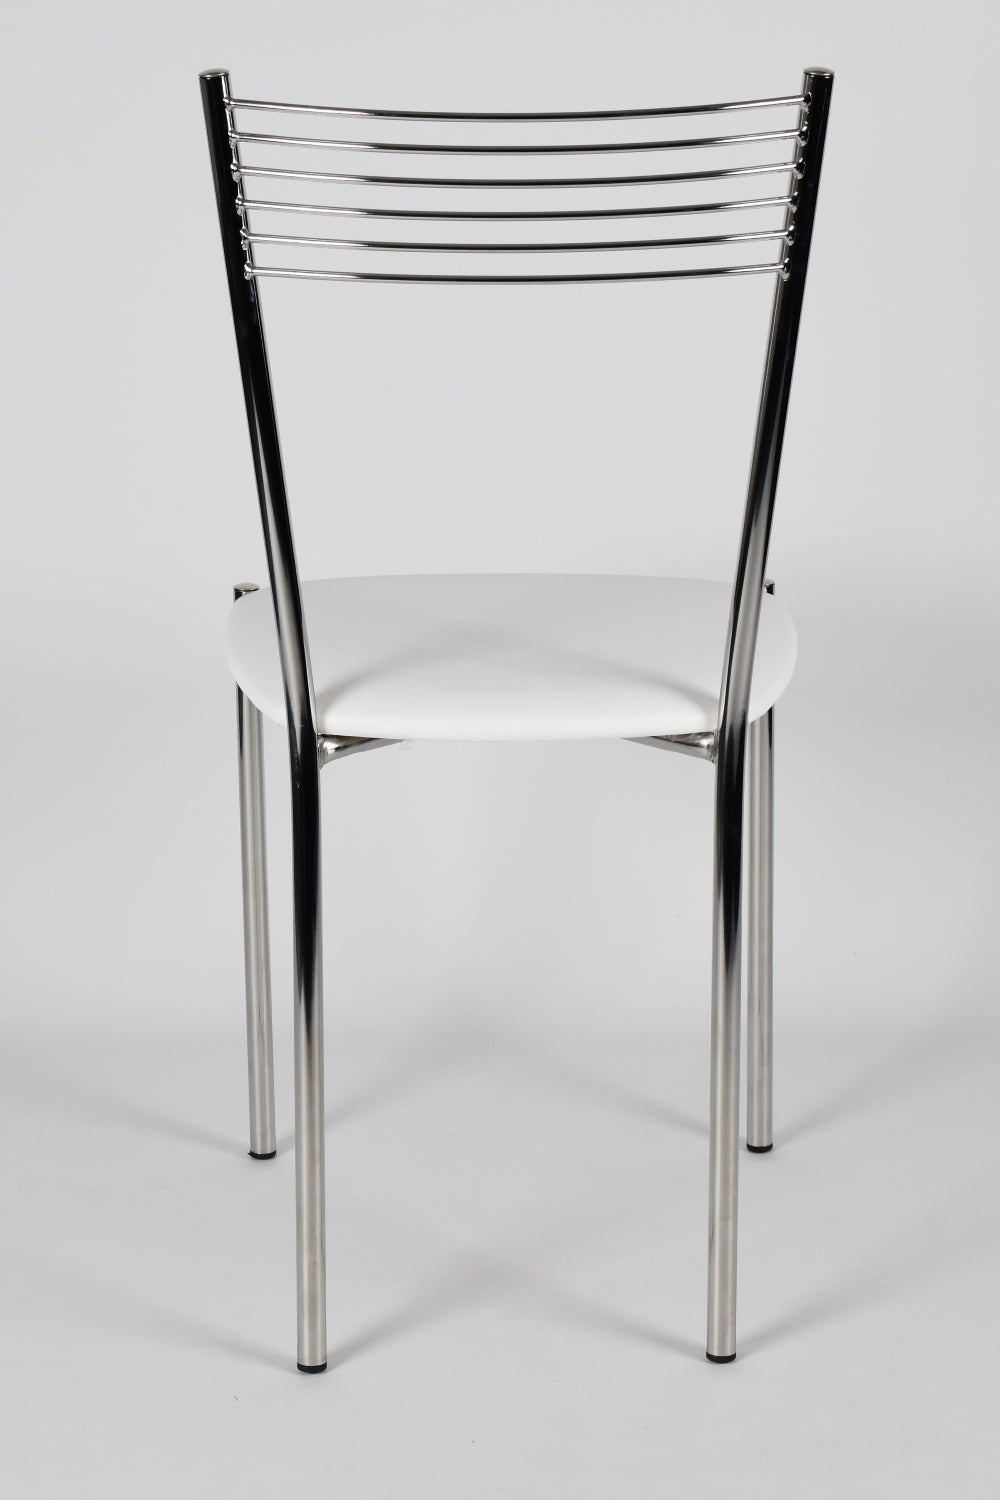 Tommychairs - Set 4 sillas de Cocina, Comedor, Bar y Restaurante Elegance, Estructura en Acero Cromado y Asiento tapizado en Polipiel Color Blanco